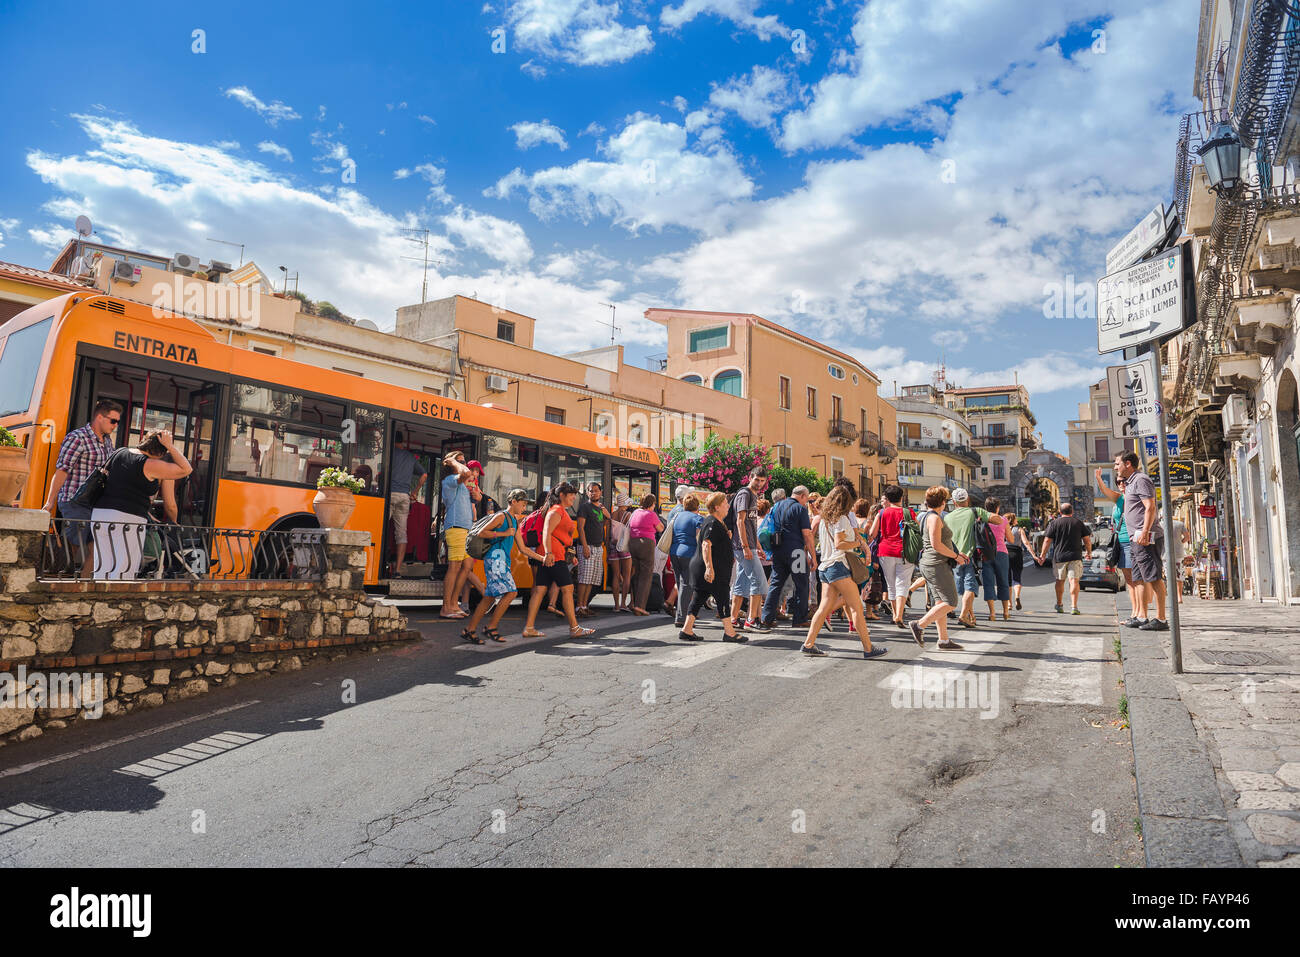 Touristes Taormina Sicile, vue des touristes quittant un bus pour commencer une journée de visites dans la station balnéaire historique de Taormina, Sicile. Banque D'Images